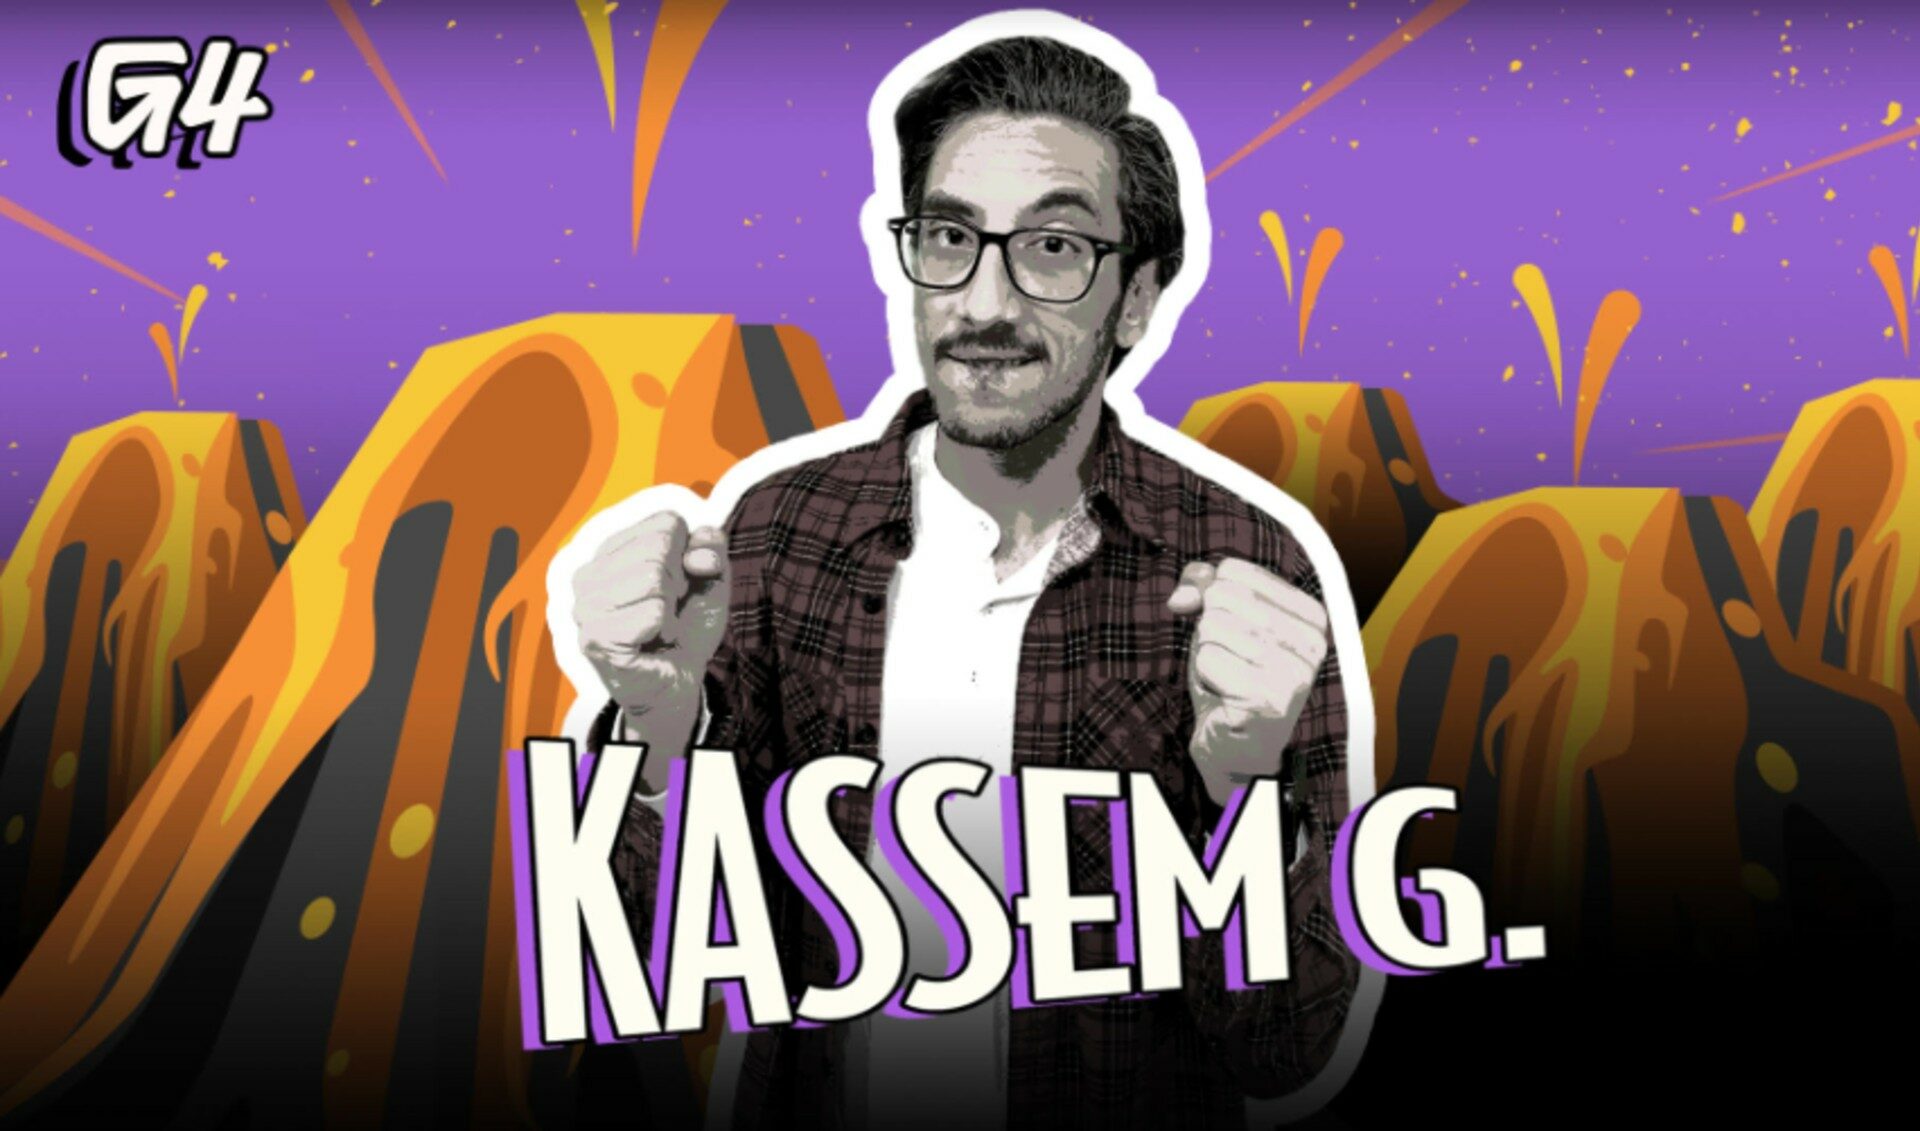 YouTube Vet, Maker Studios Co-Founder ‘Kassem G’ Lands Hosting Gig At Soon-To-Relaunch G4